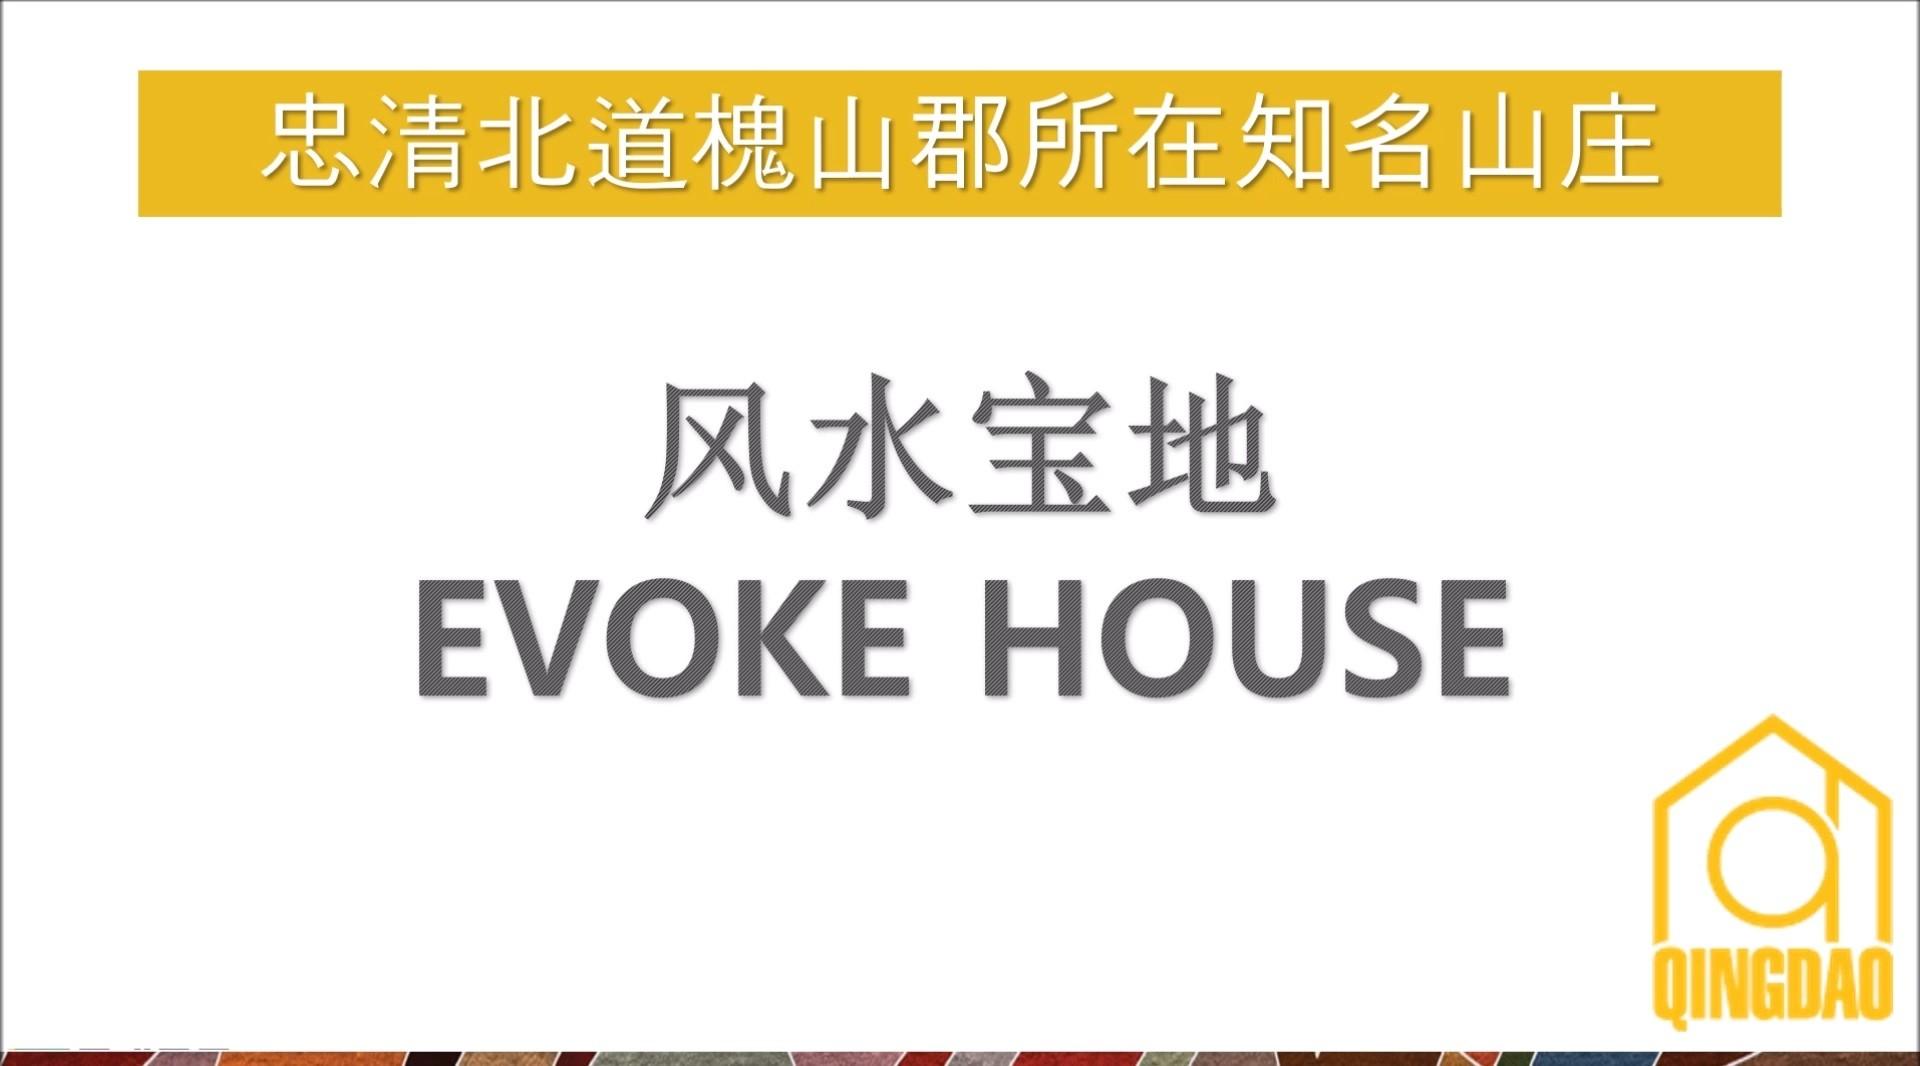 191025 风水宝地 Evoke House